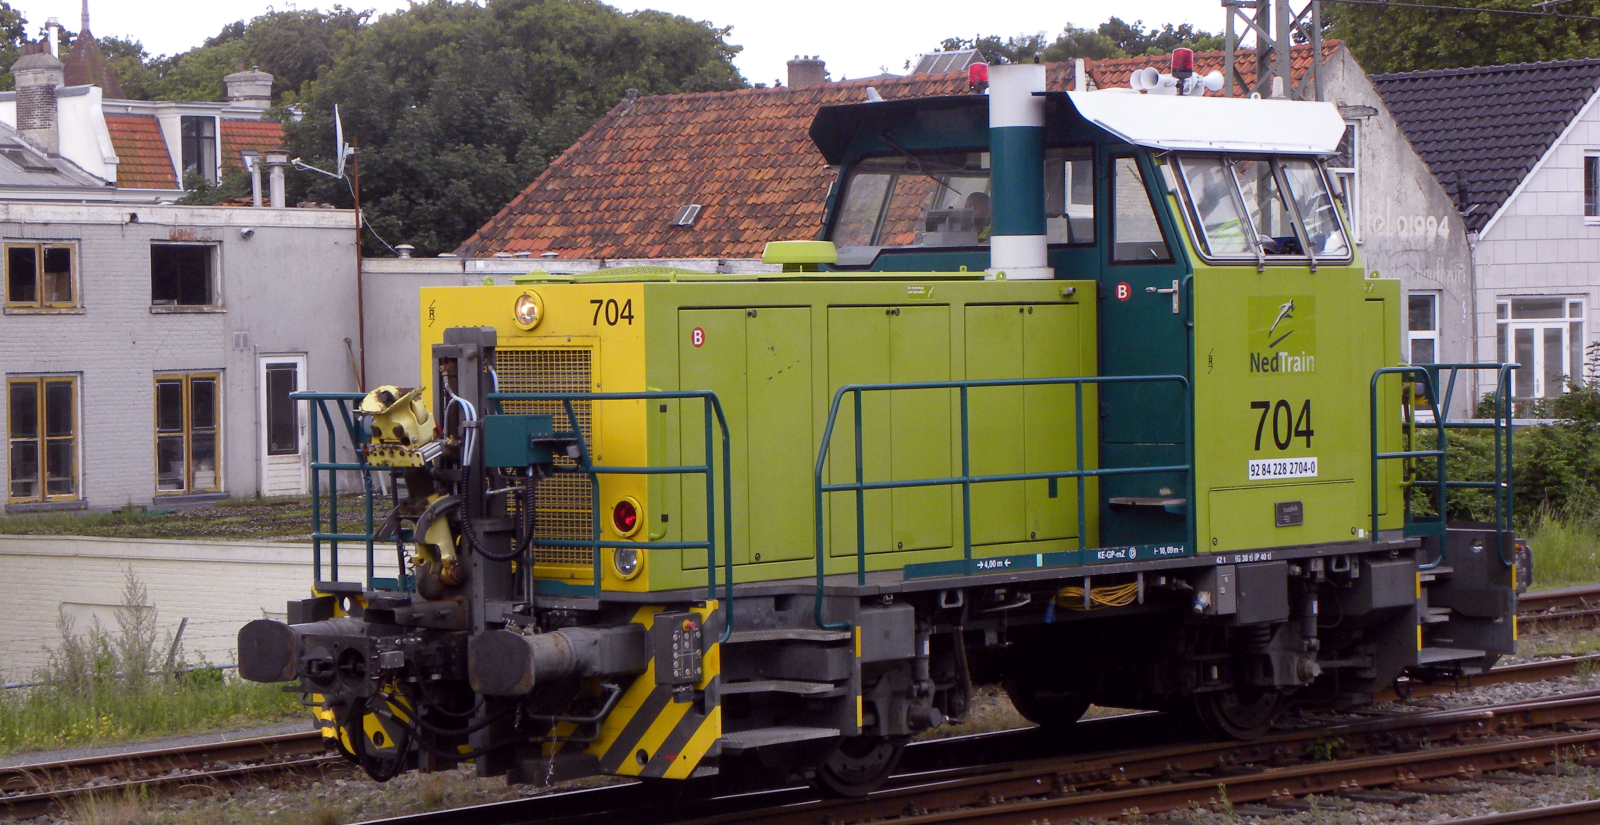 NS 704 in July 2009